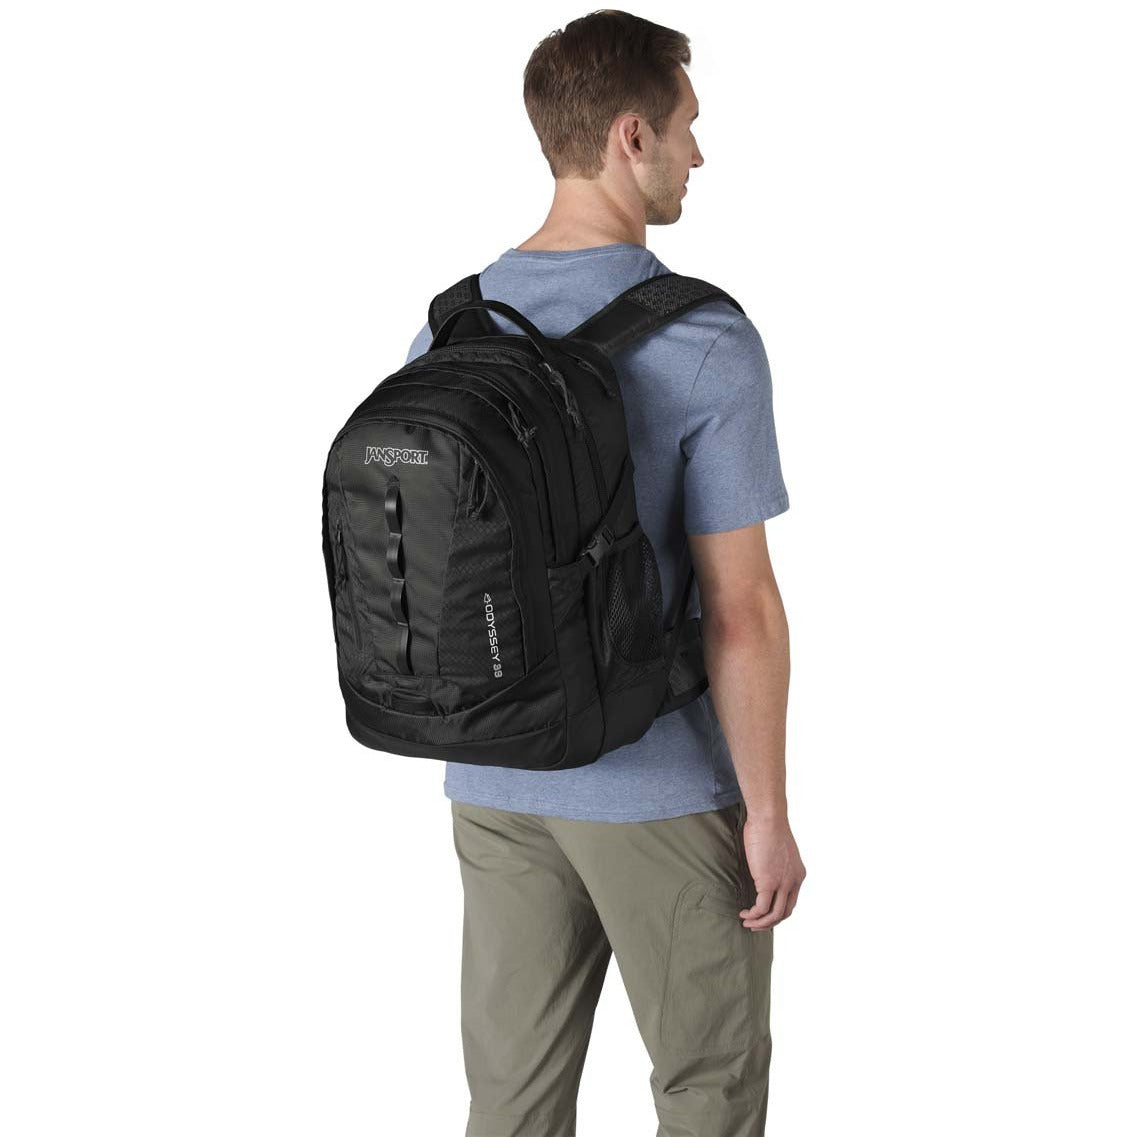 Jansport Odyssey Laptop Backpack - Black